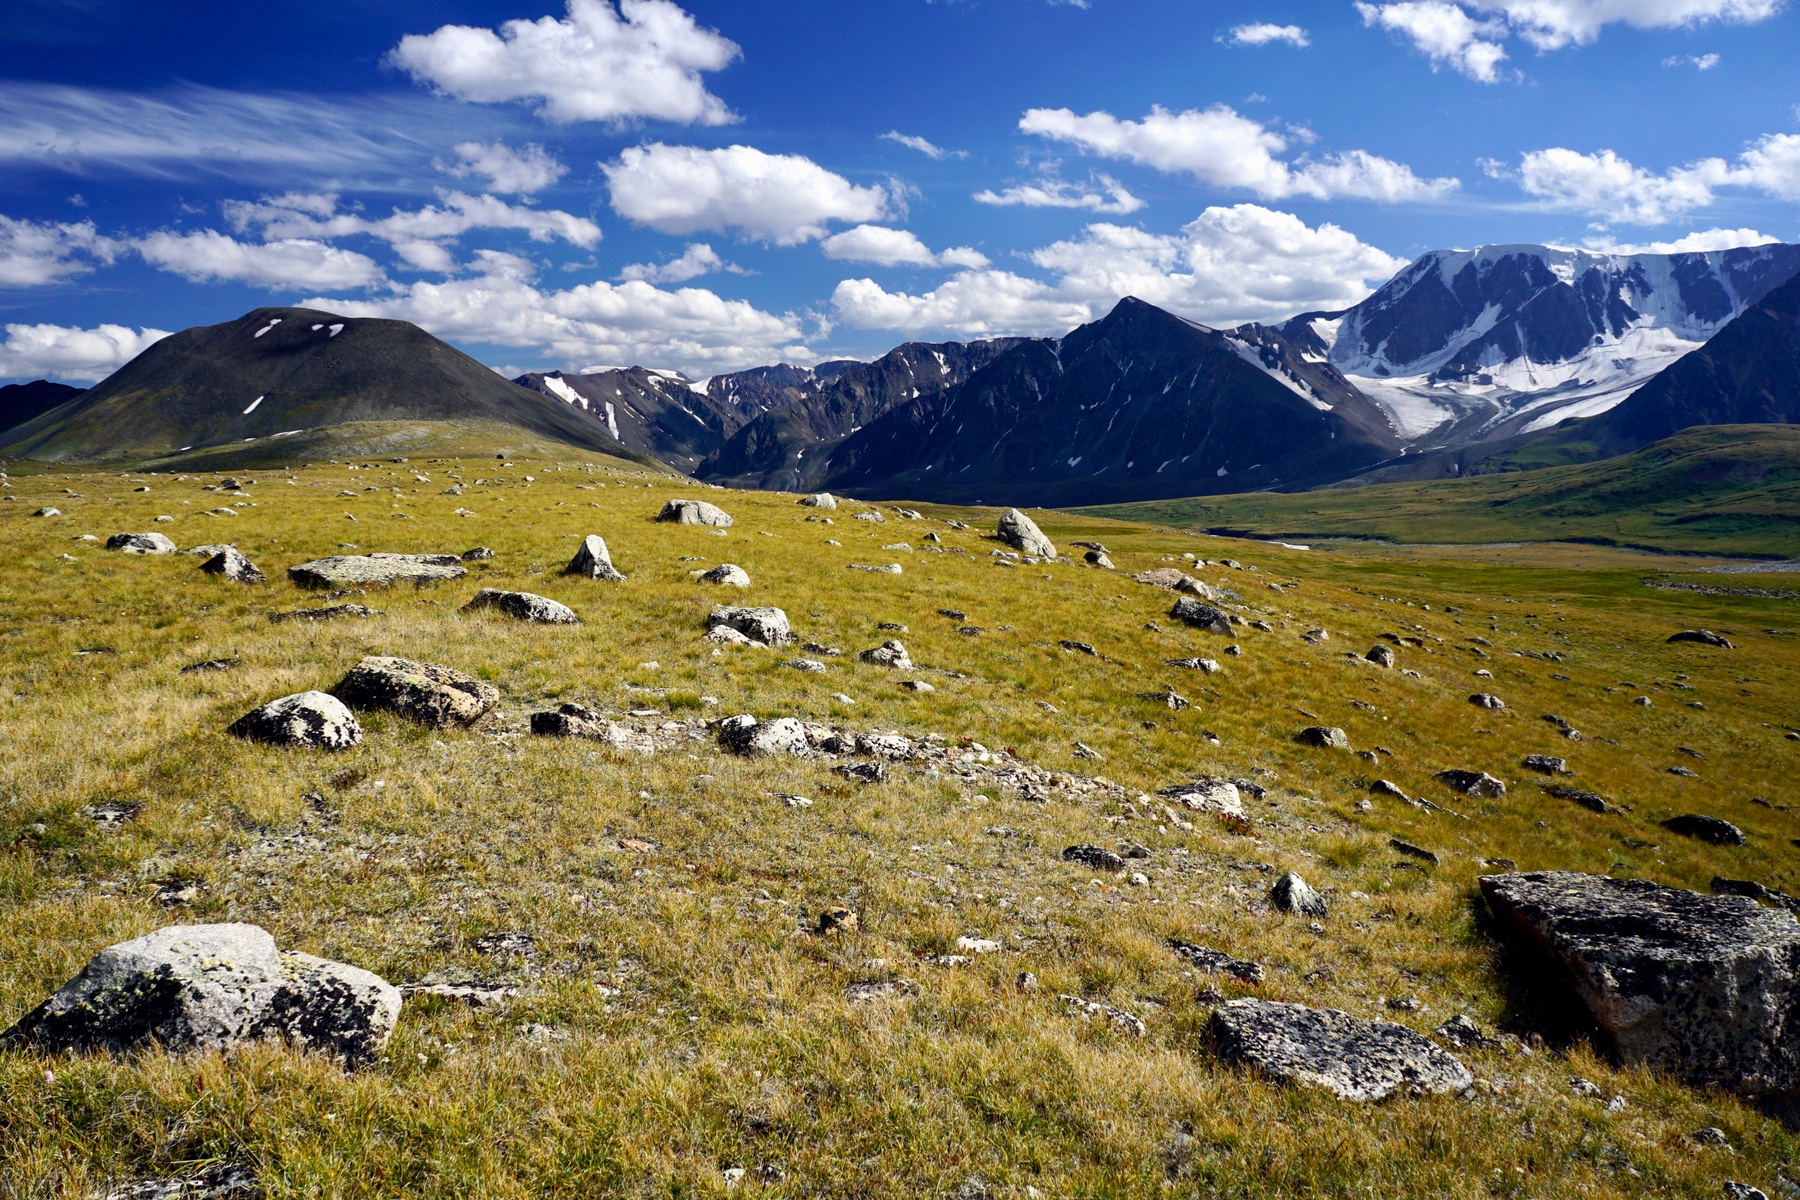 Altai Mountains, Mongolia